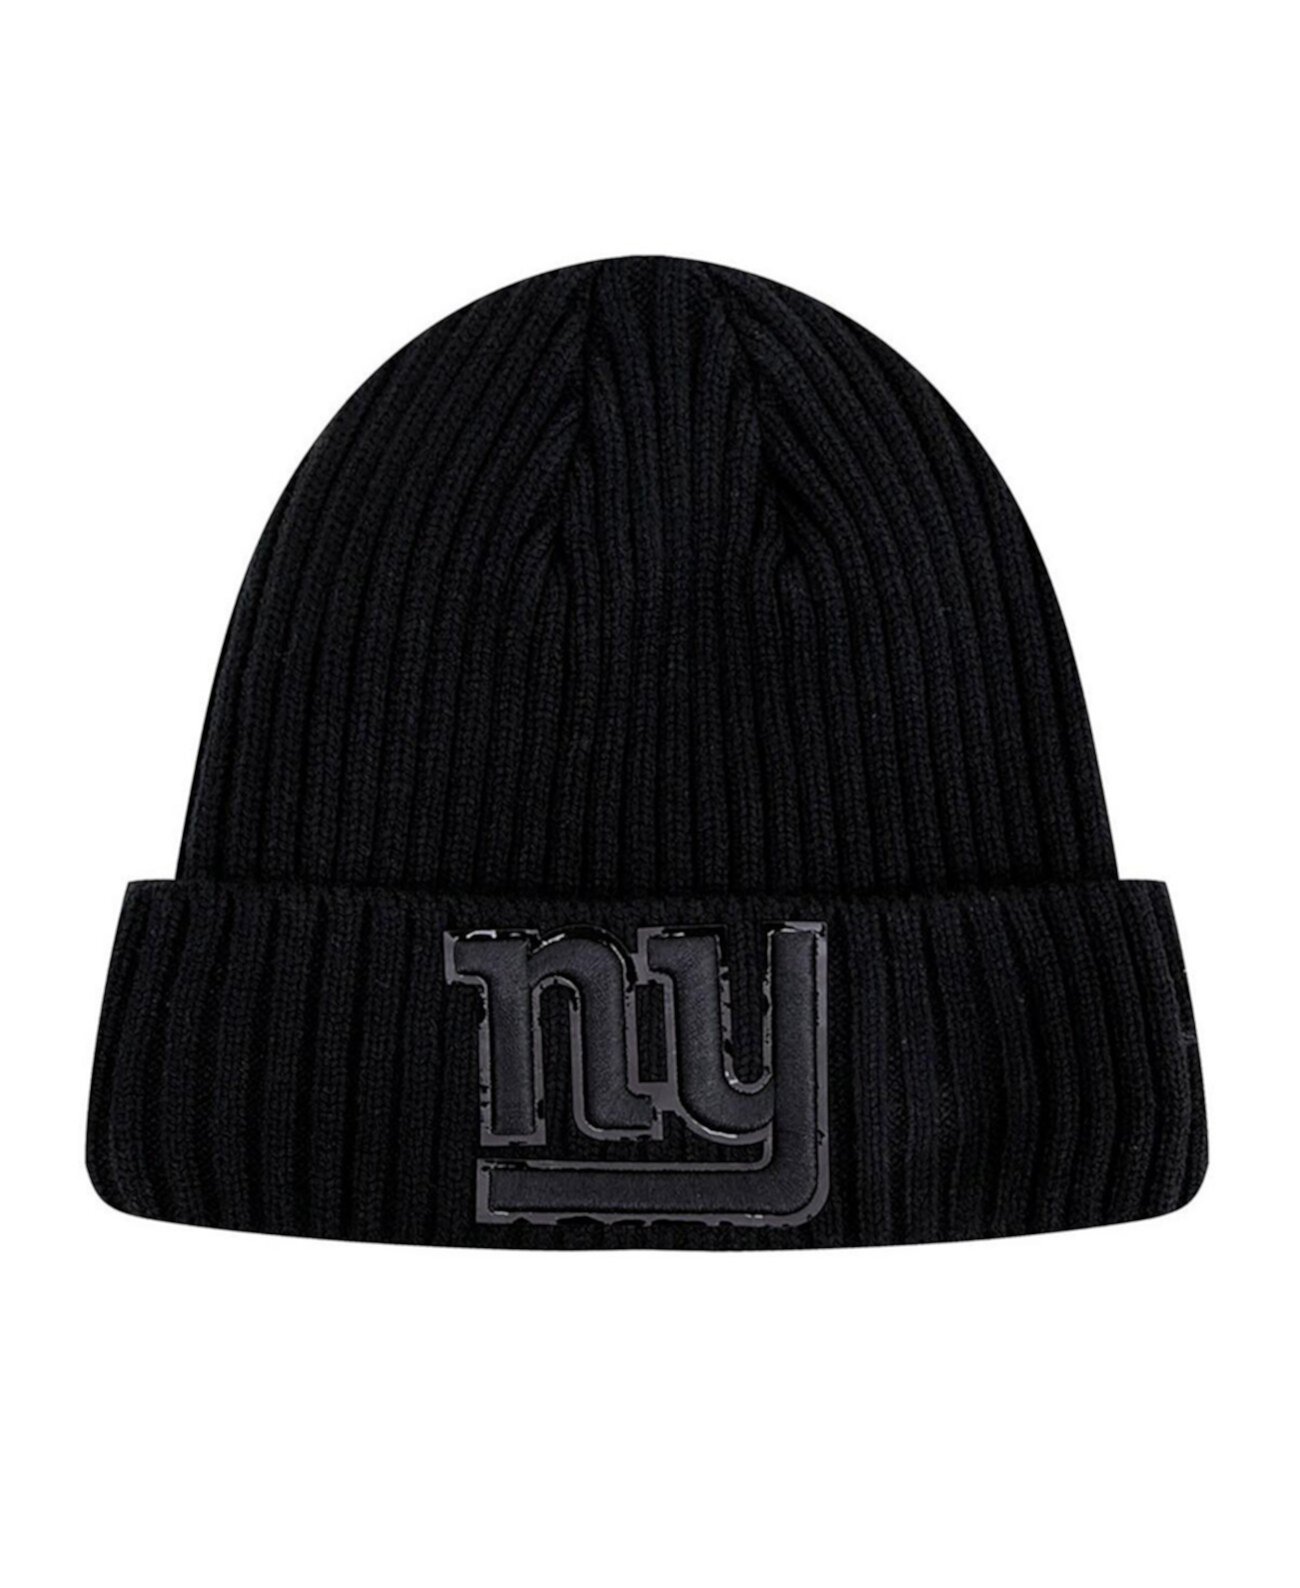 Мужская трикотажная шапка New York Giants тройного черного цвета с манжетами Pro Standard